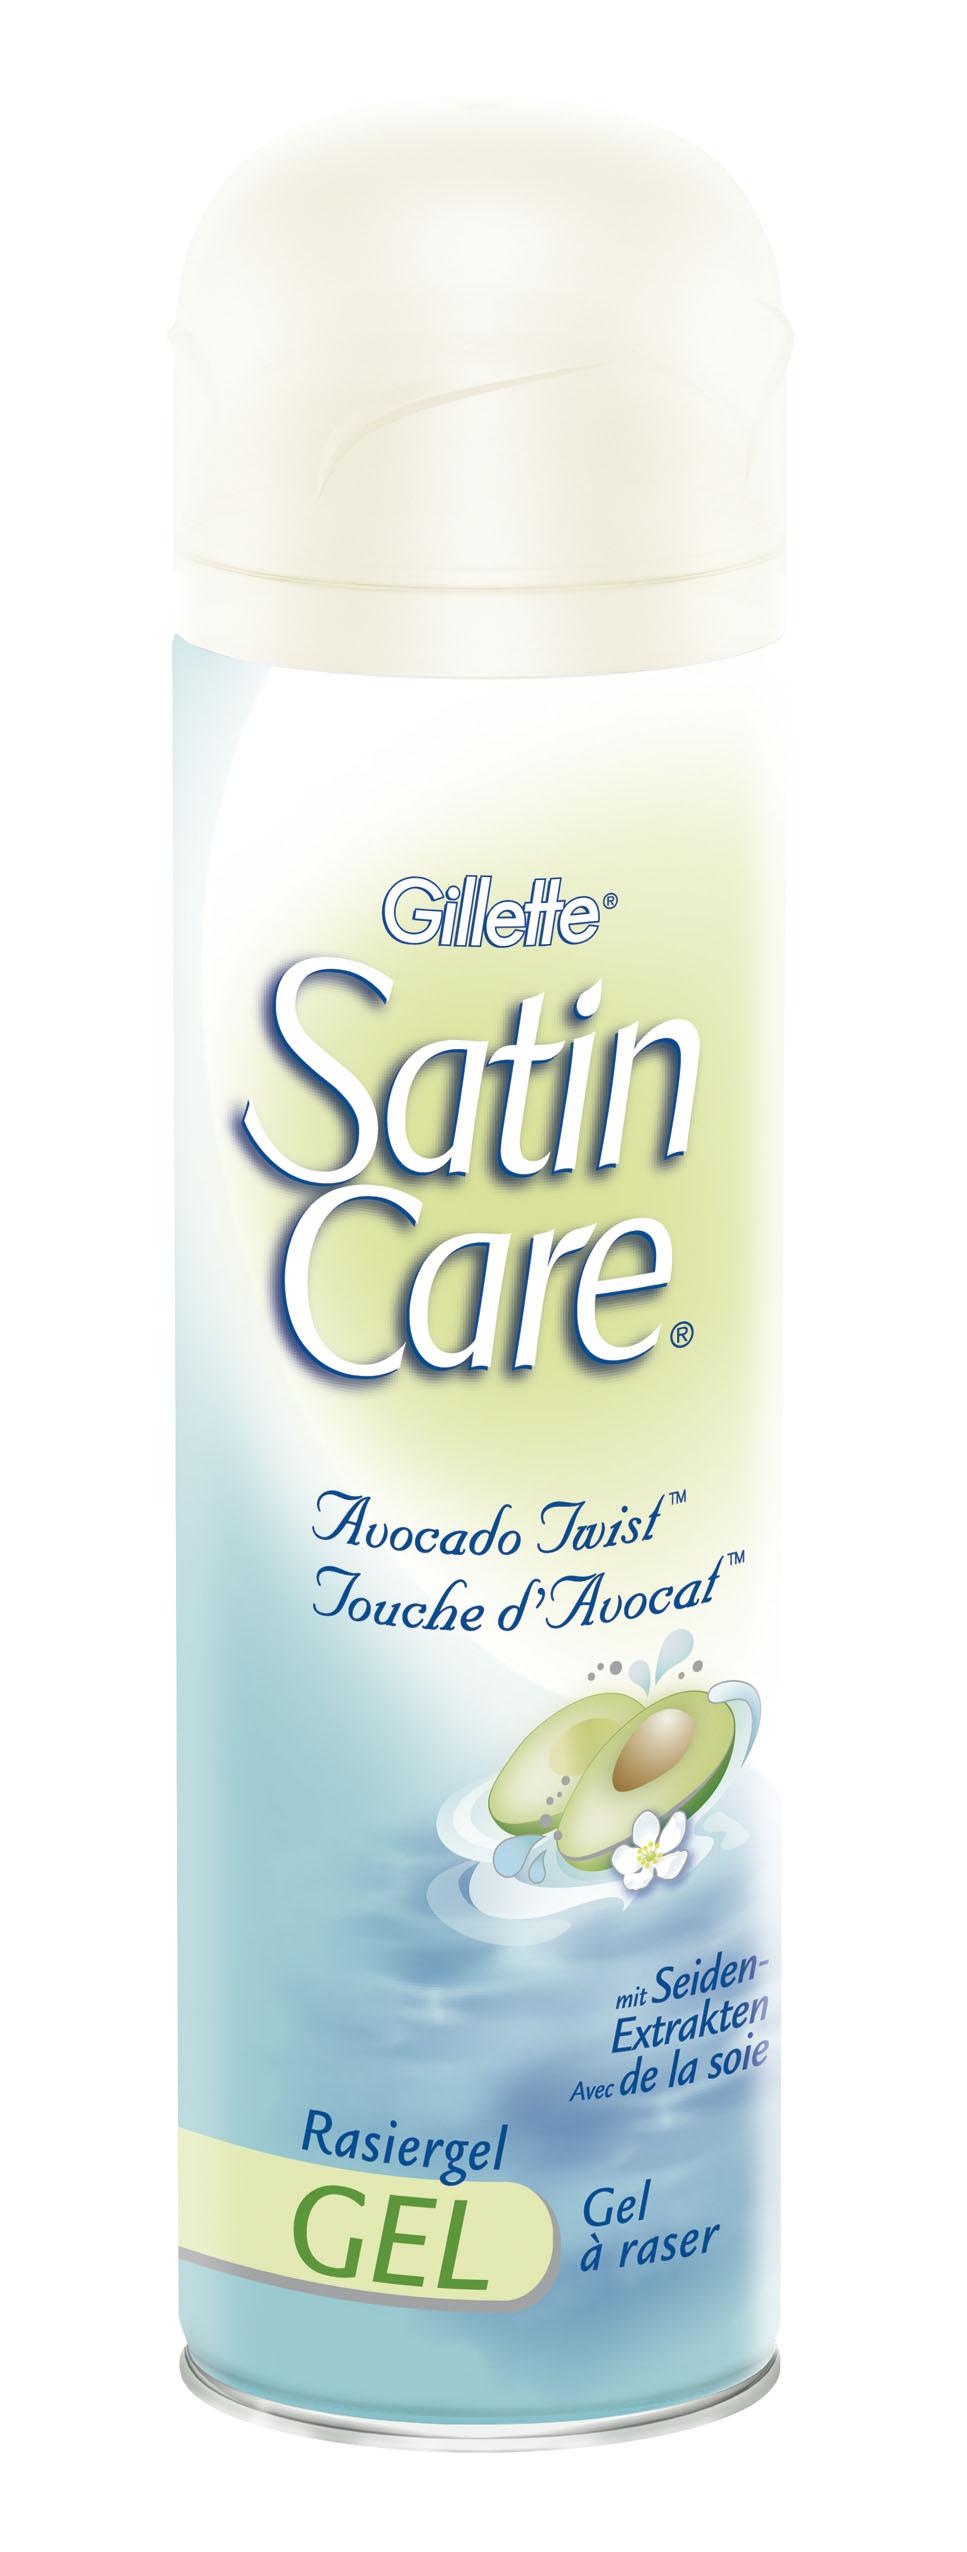 Gilette Satin Care scheergel - €4.75